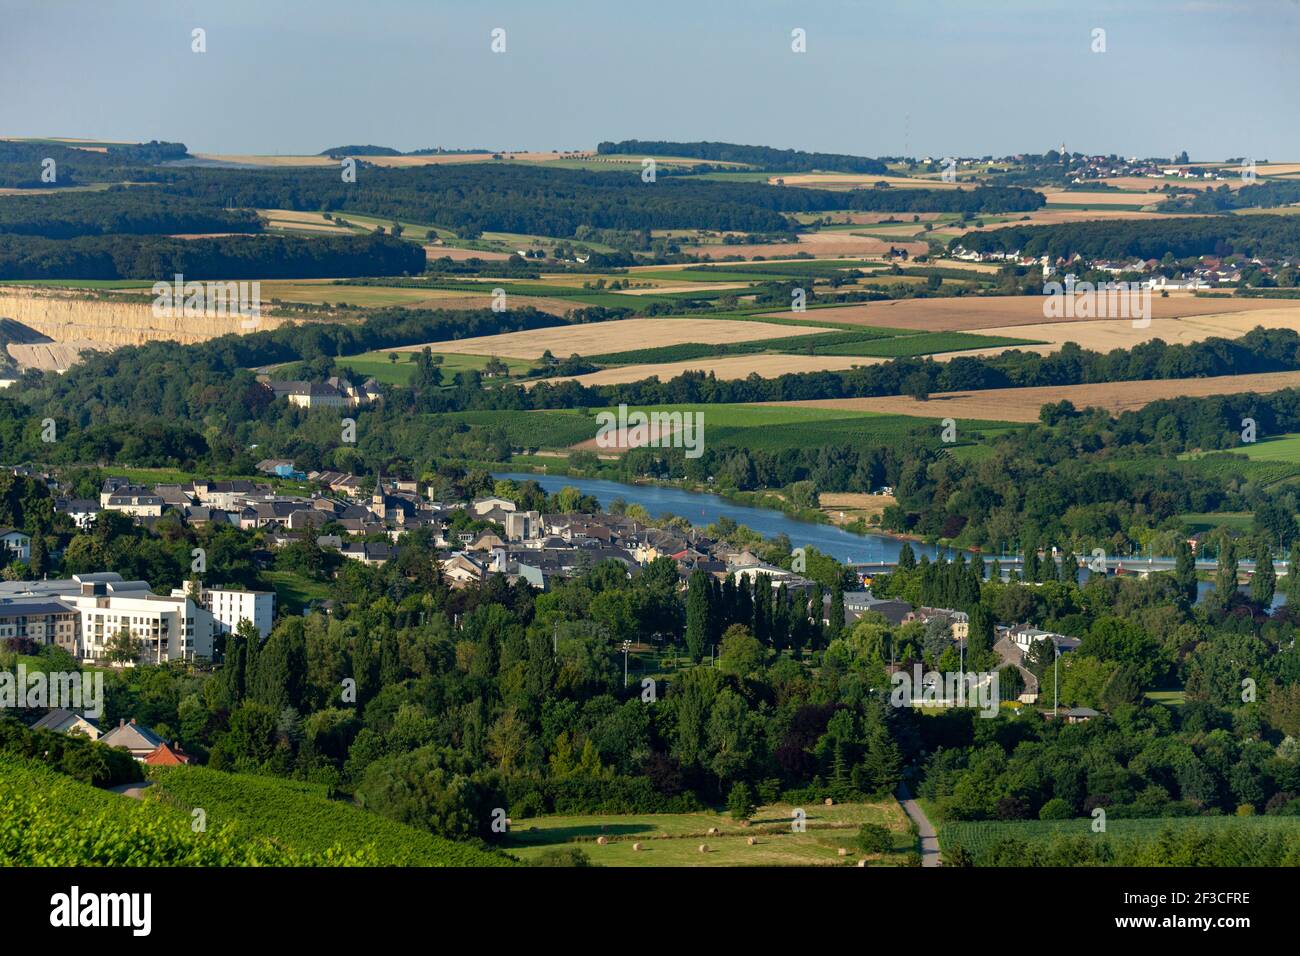 Luxemburg: Die Stadt Remich, im Moseltal. Überblick über die Landschaft und die Stadt mit der umliegenden Landschaft und der Mosel Stockfoto